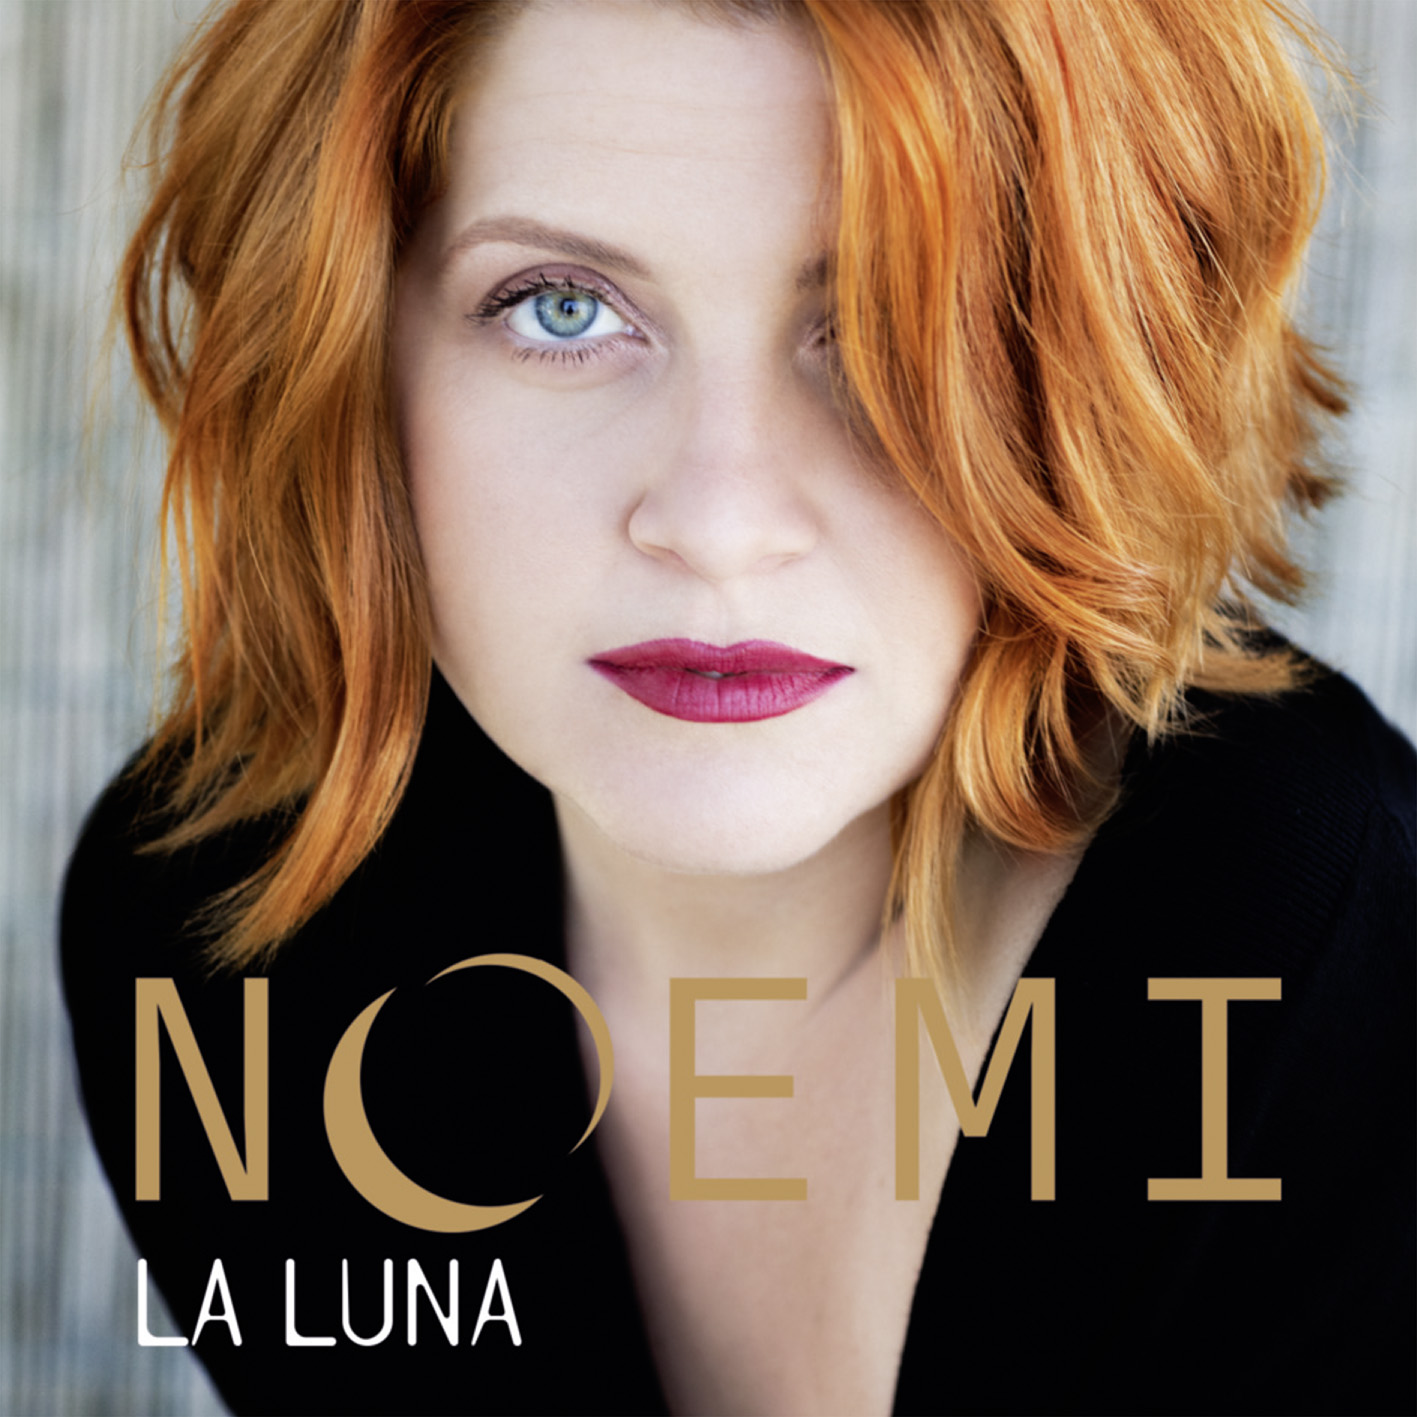  Noemi, “La Luna” è il nuovo album disponibile nei negozi e in digitale